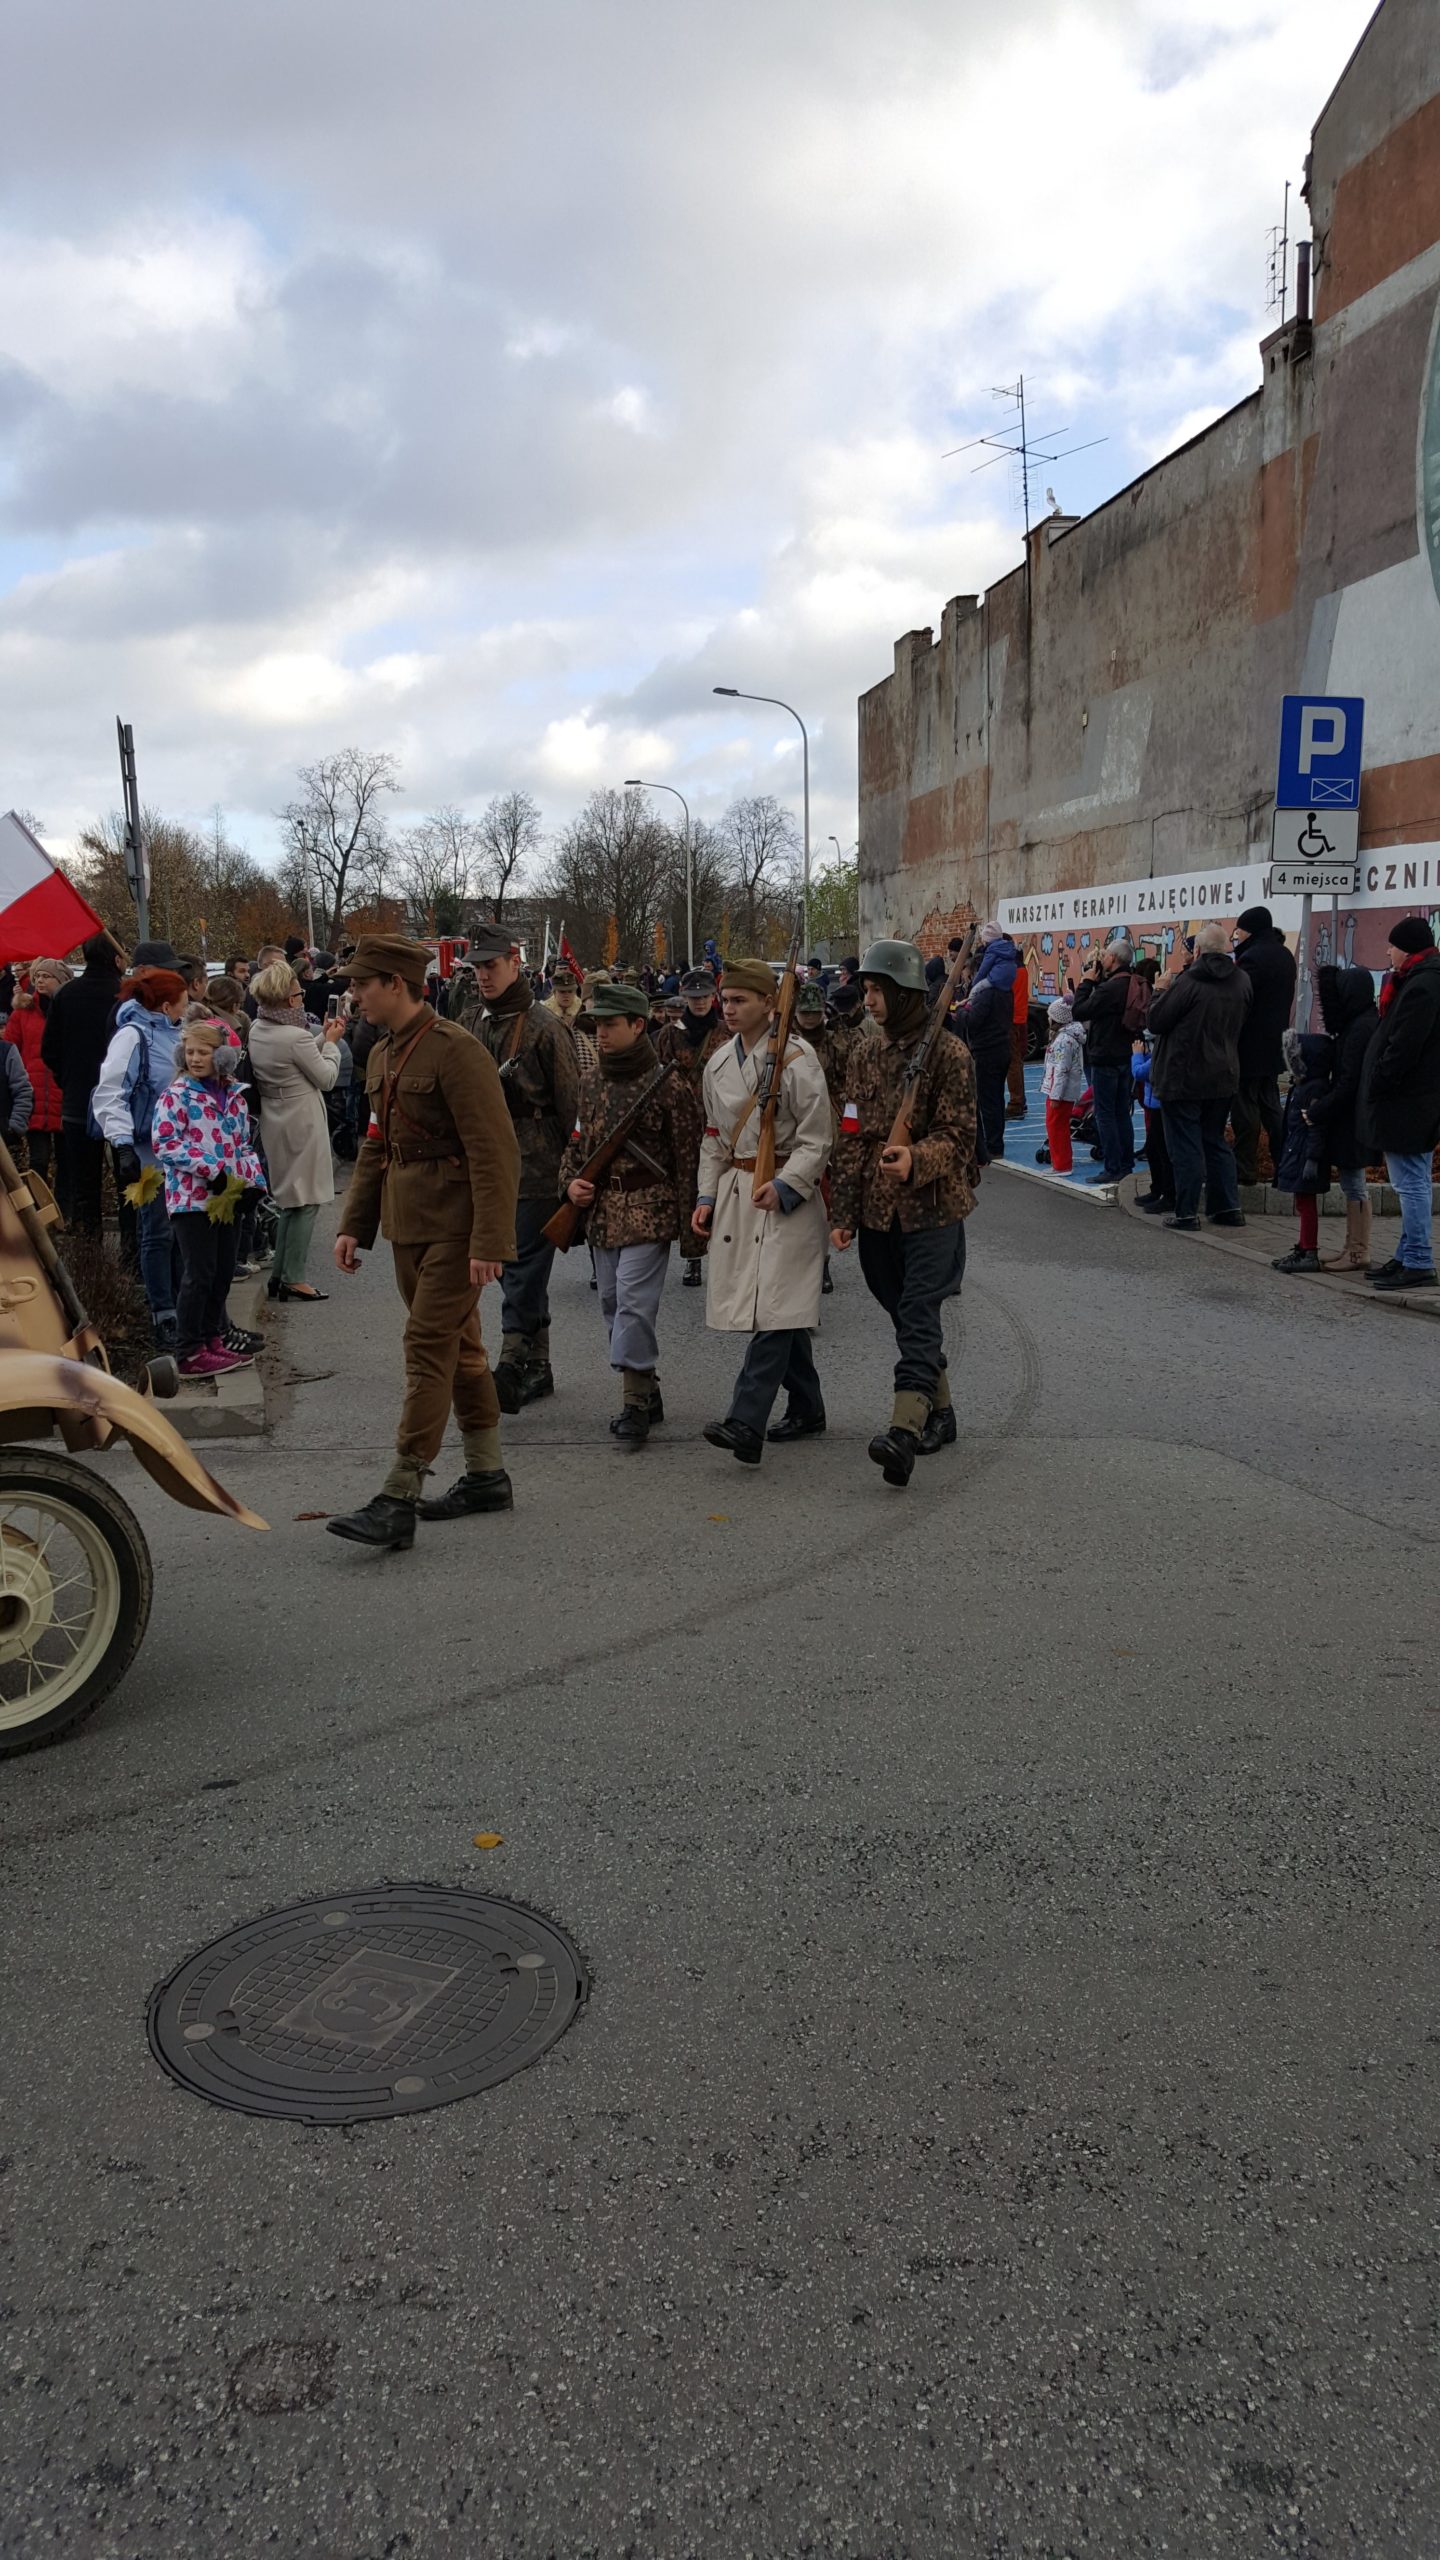 Przejście parady z parkingu przy Urzędzie miasta, przedstawiciele historycznych oddziałów wojskowych